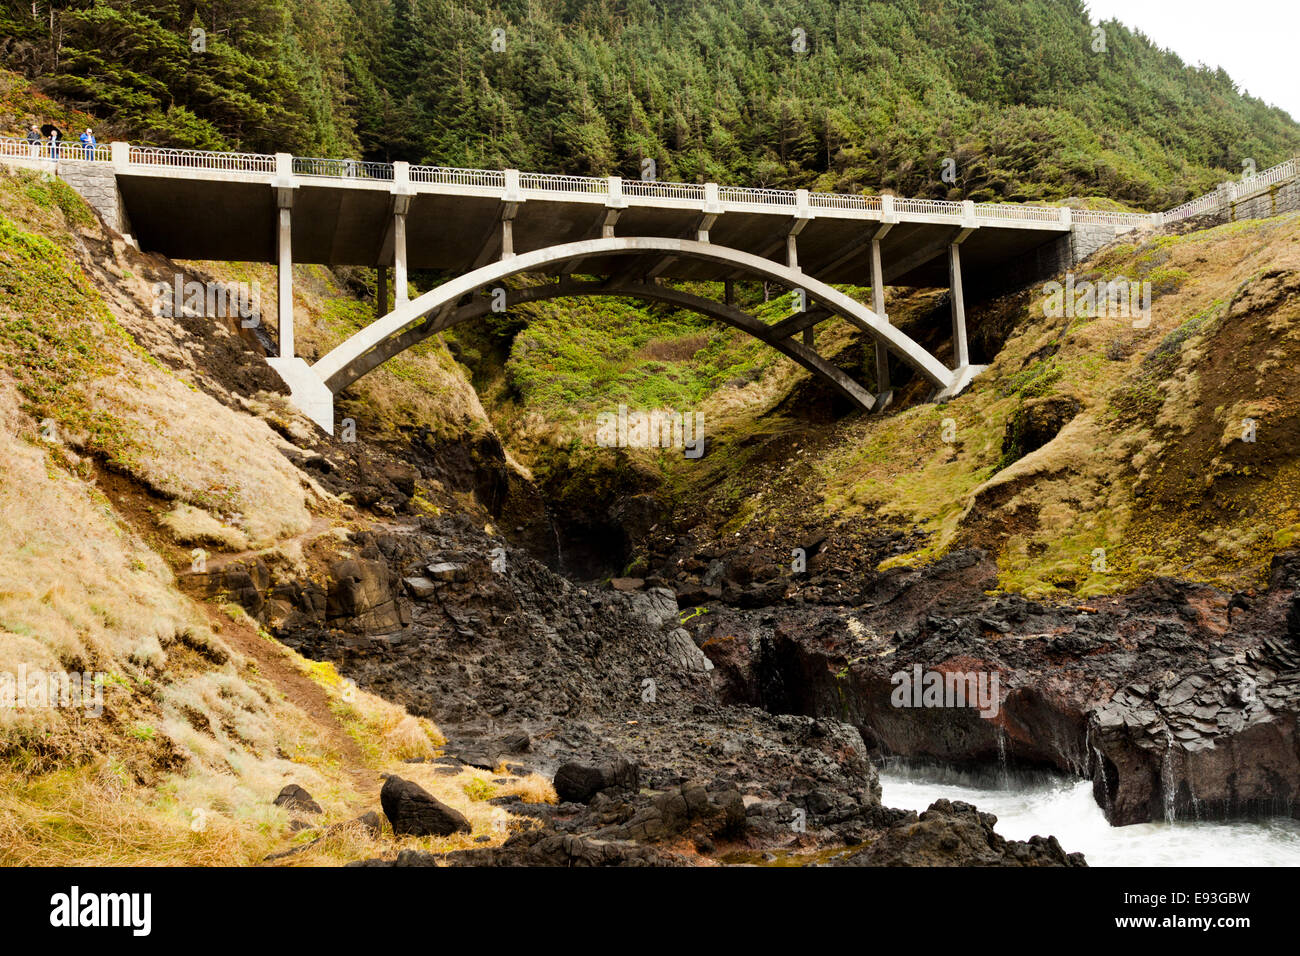 El puente que lleva a la autopista 101 a través de la angosta ensenada llamado Cook's Chasm en la costa de Oregon Estados Unidos Foto de stock